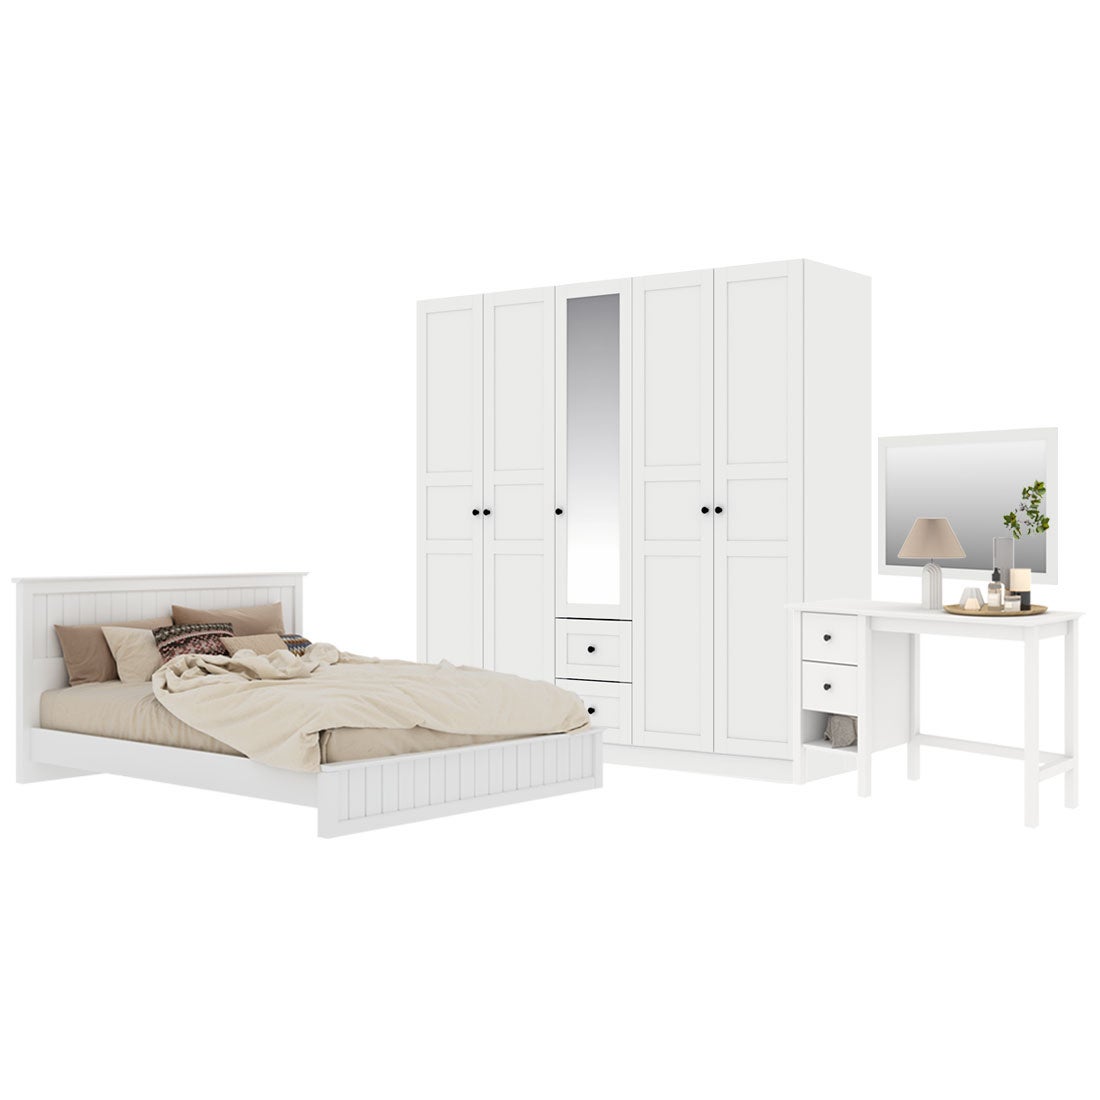 ชุดห้องนอน ขนาด 6 ฟุต รุ่น Moneta & ตู้บานเปิด 200 ซม. สีขาว01